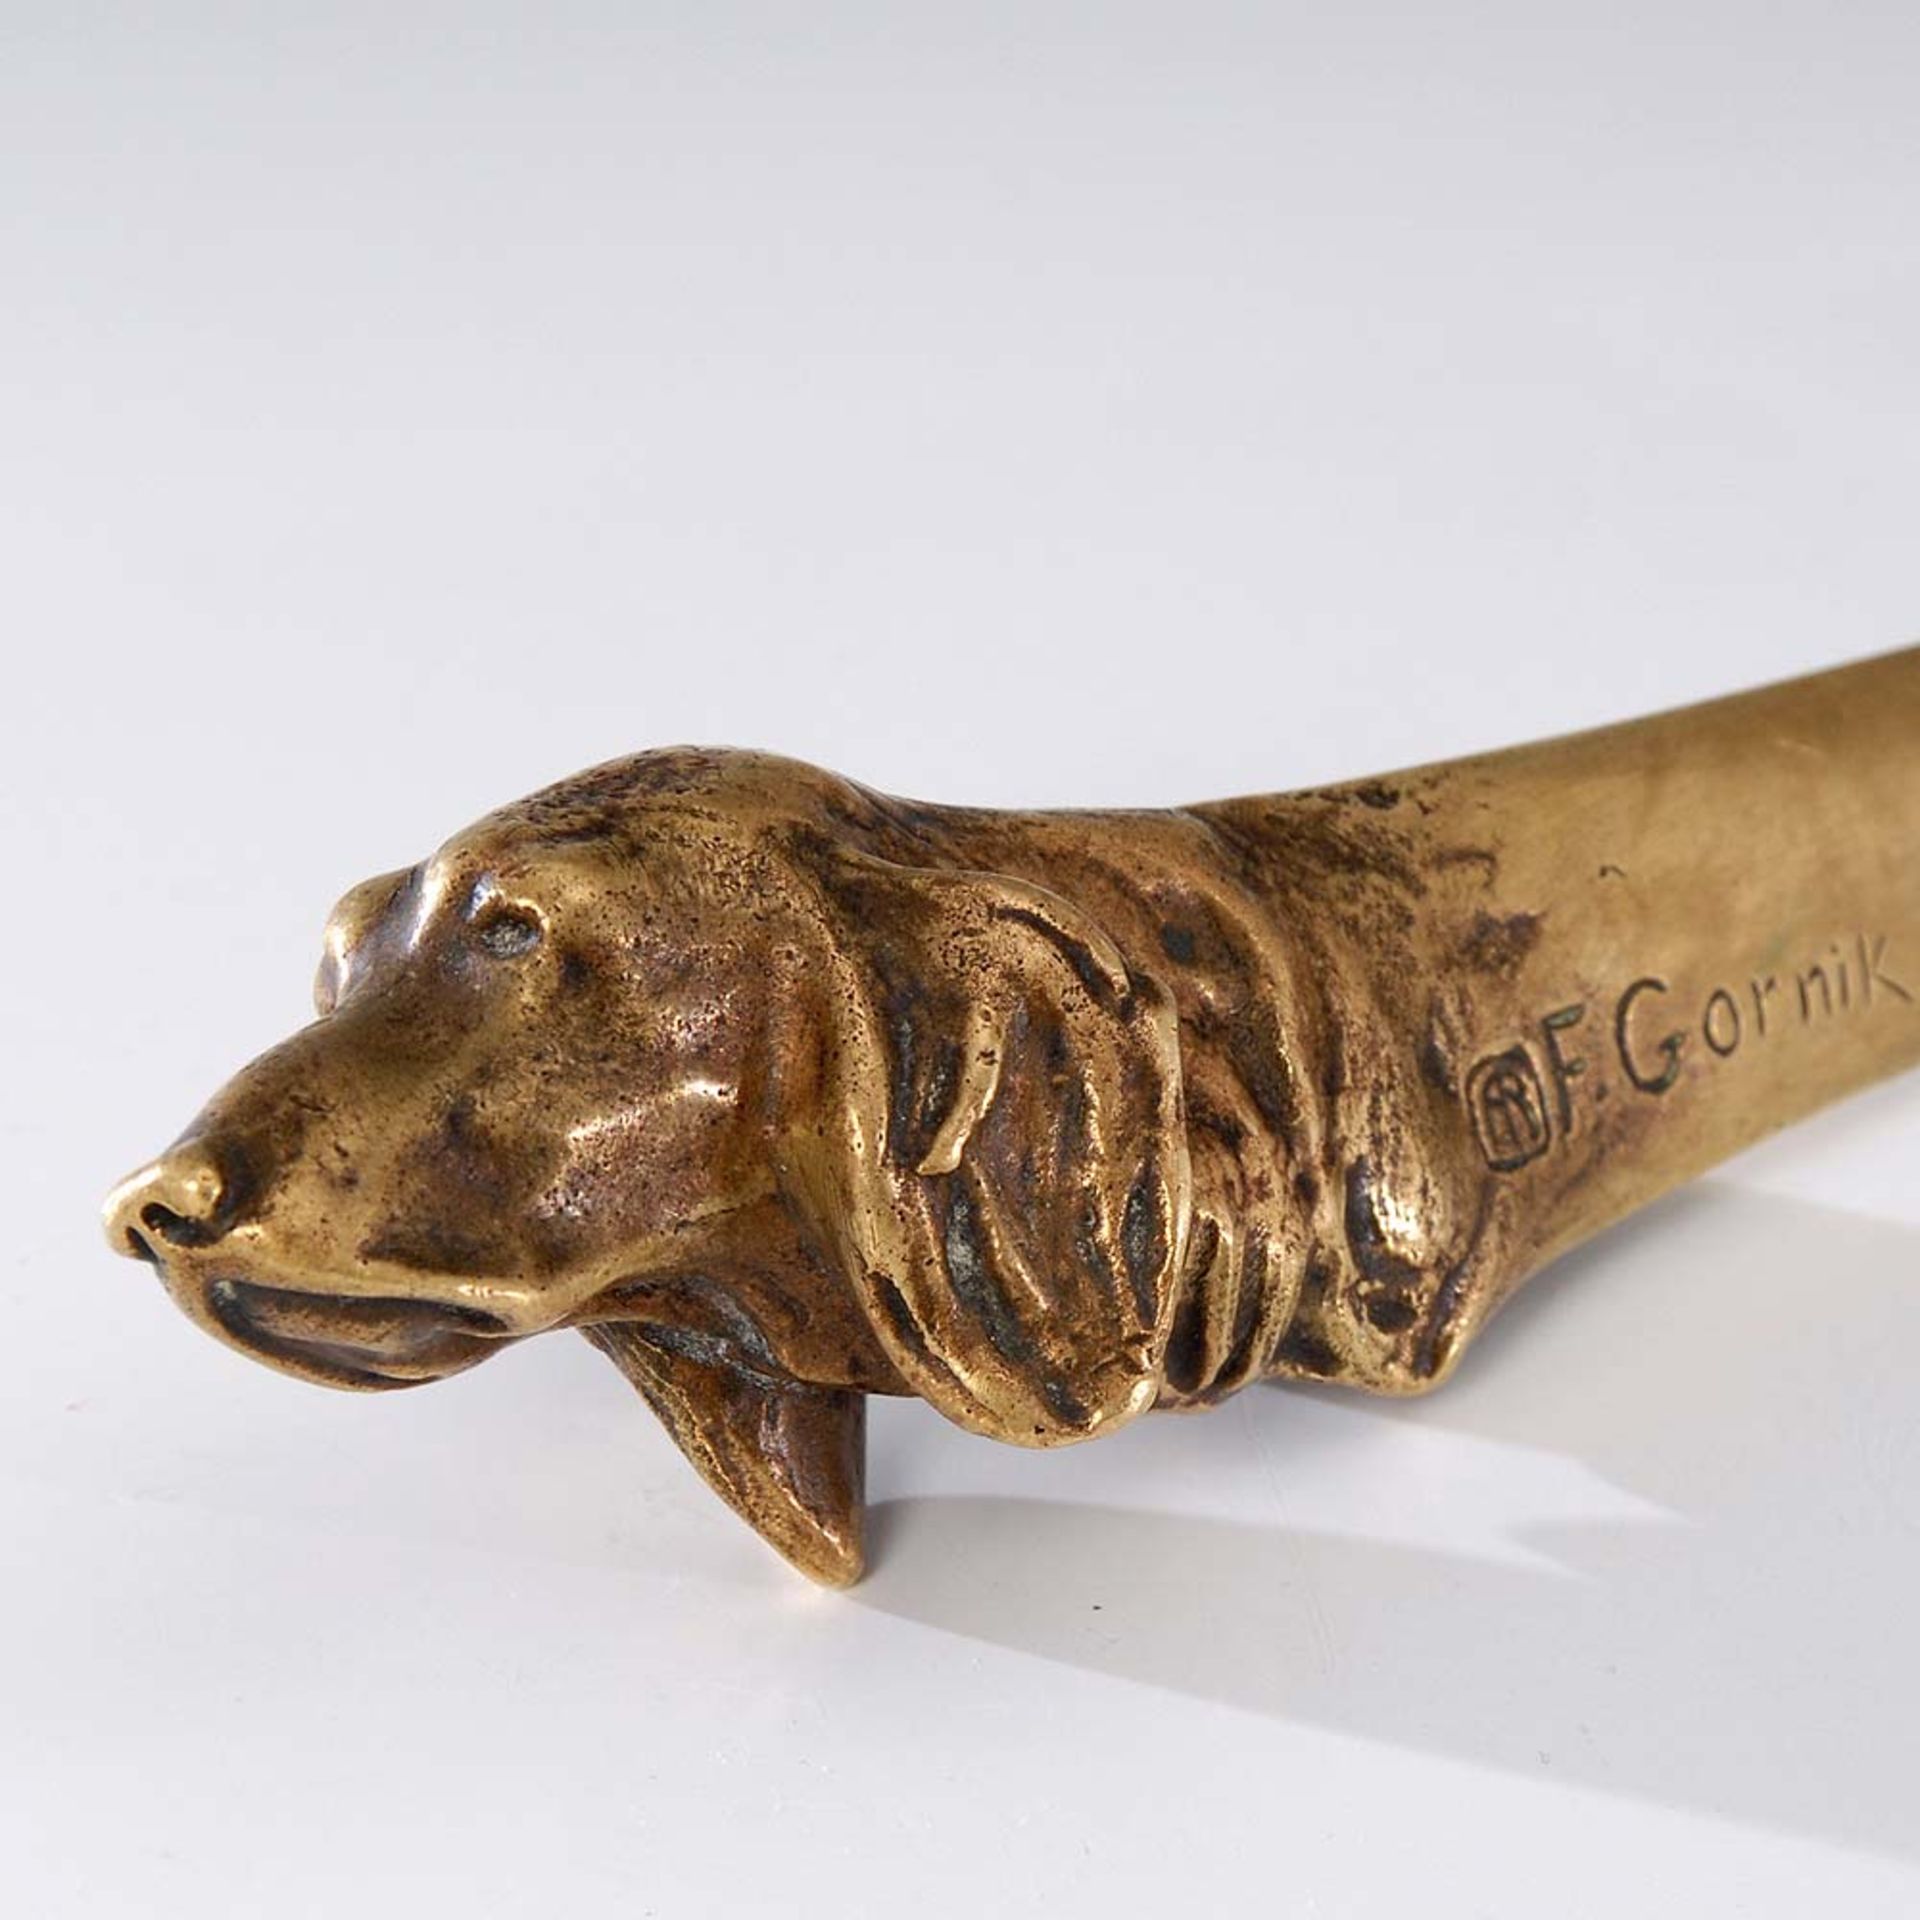 Gornik, Friedrich: Brieföffner mit Hundekopf. Bronze, bezeichnet, Gießer-Marke Arthur Rubinstein